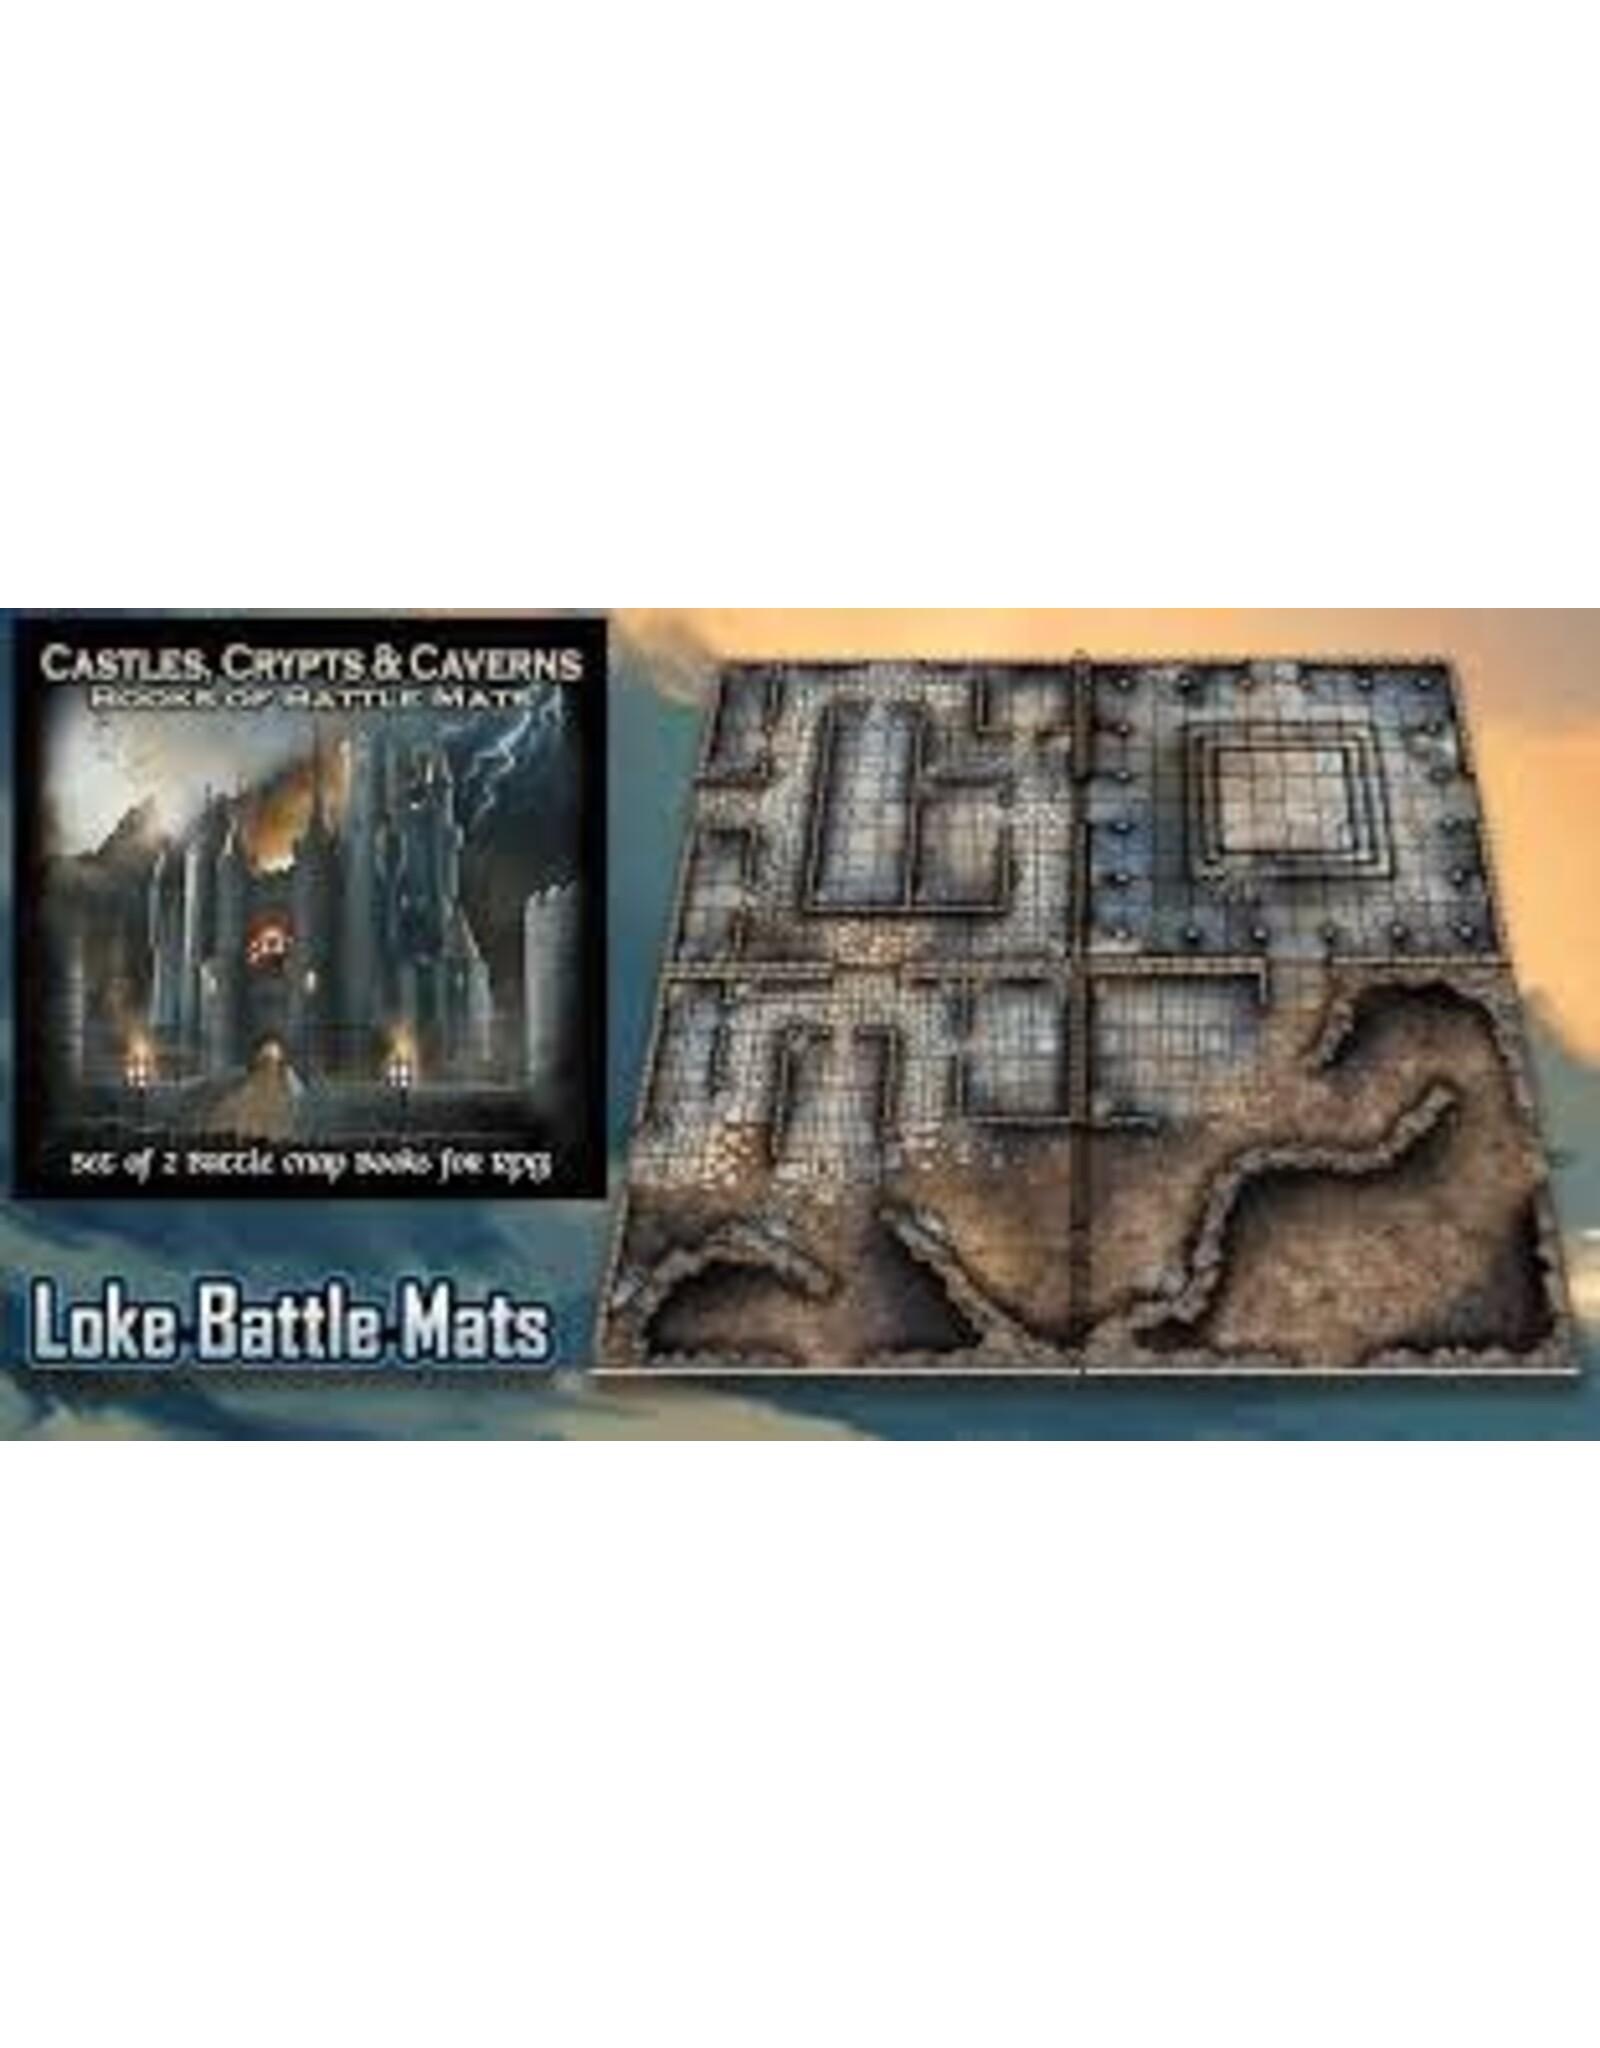 https://cdn.shoplightspeed.com/shops/636627/files/55894989/1600x2048x2/loke-battlemats-castles-crypts-caverns-battle-mats.jpg